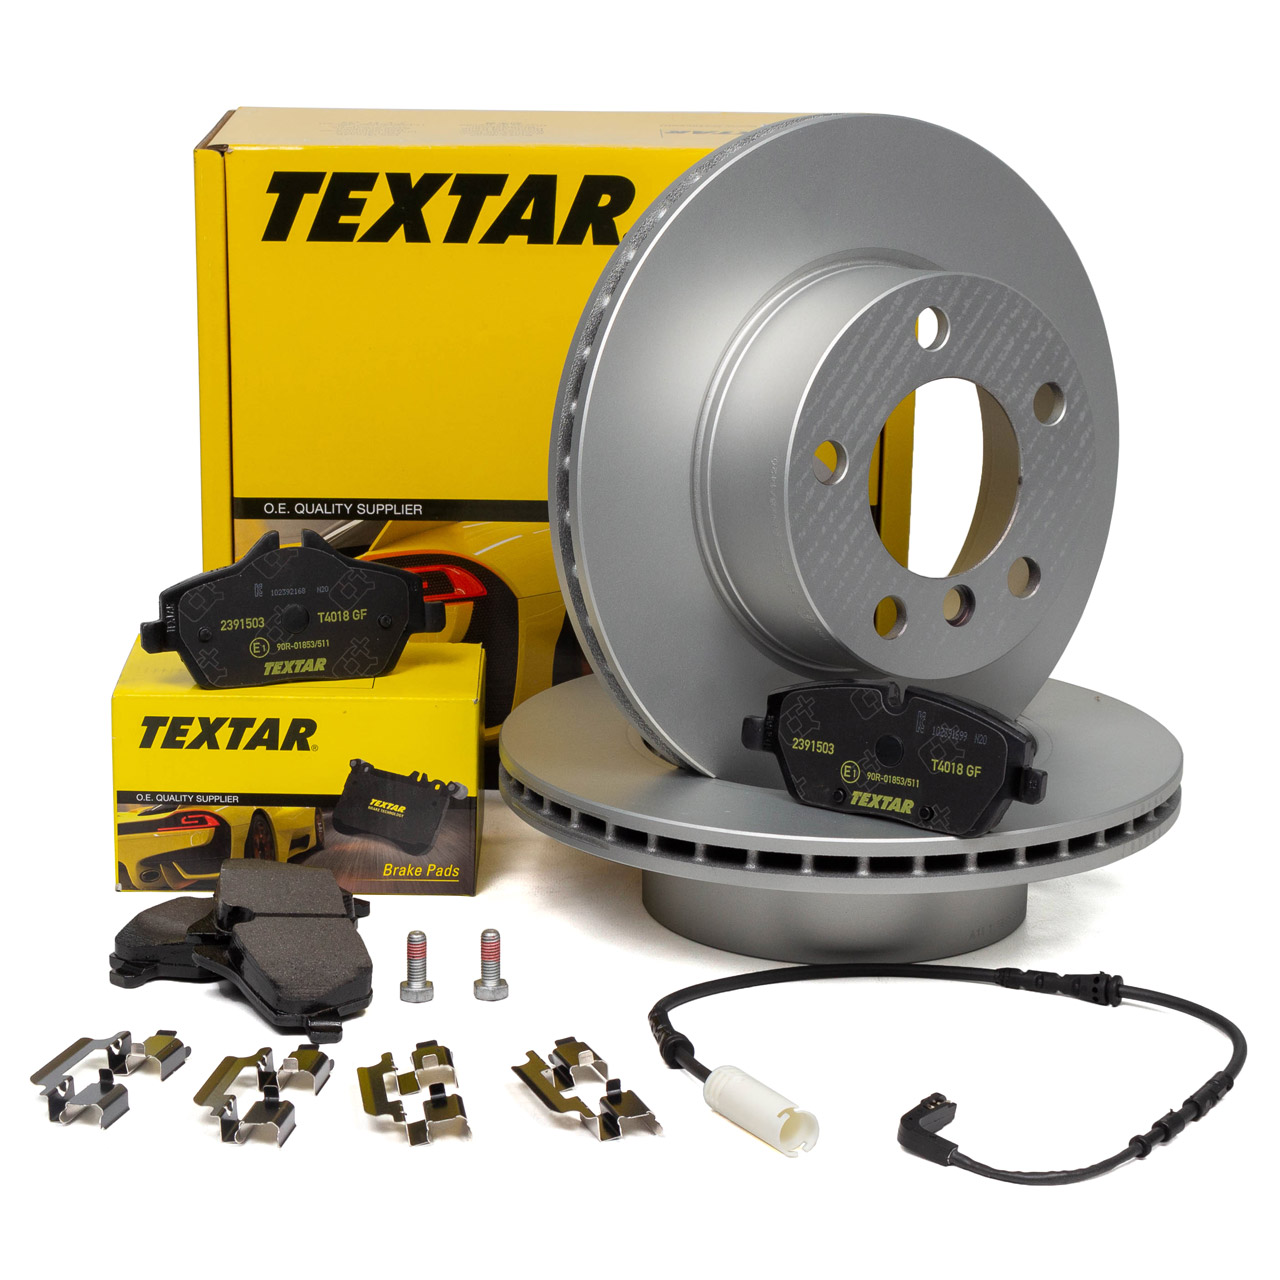 TEXTAR Bremsen Sets - 92238403, 2391503, A059079 